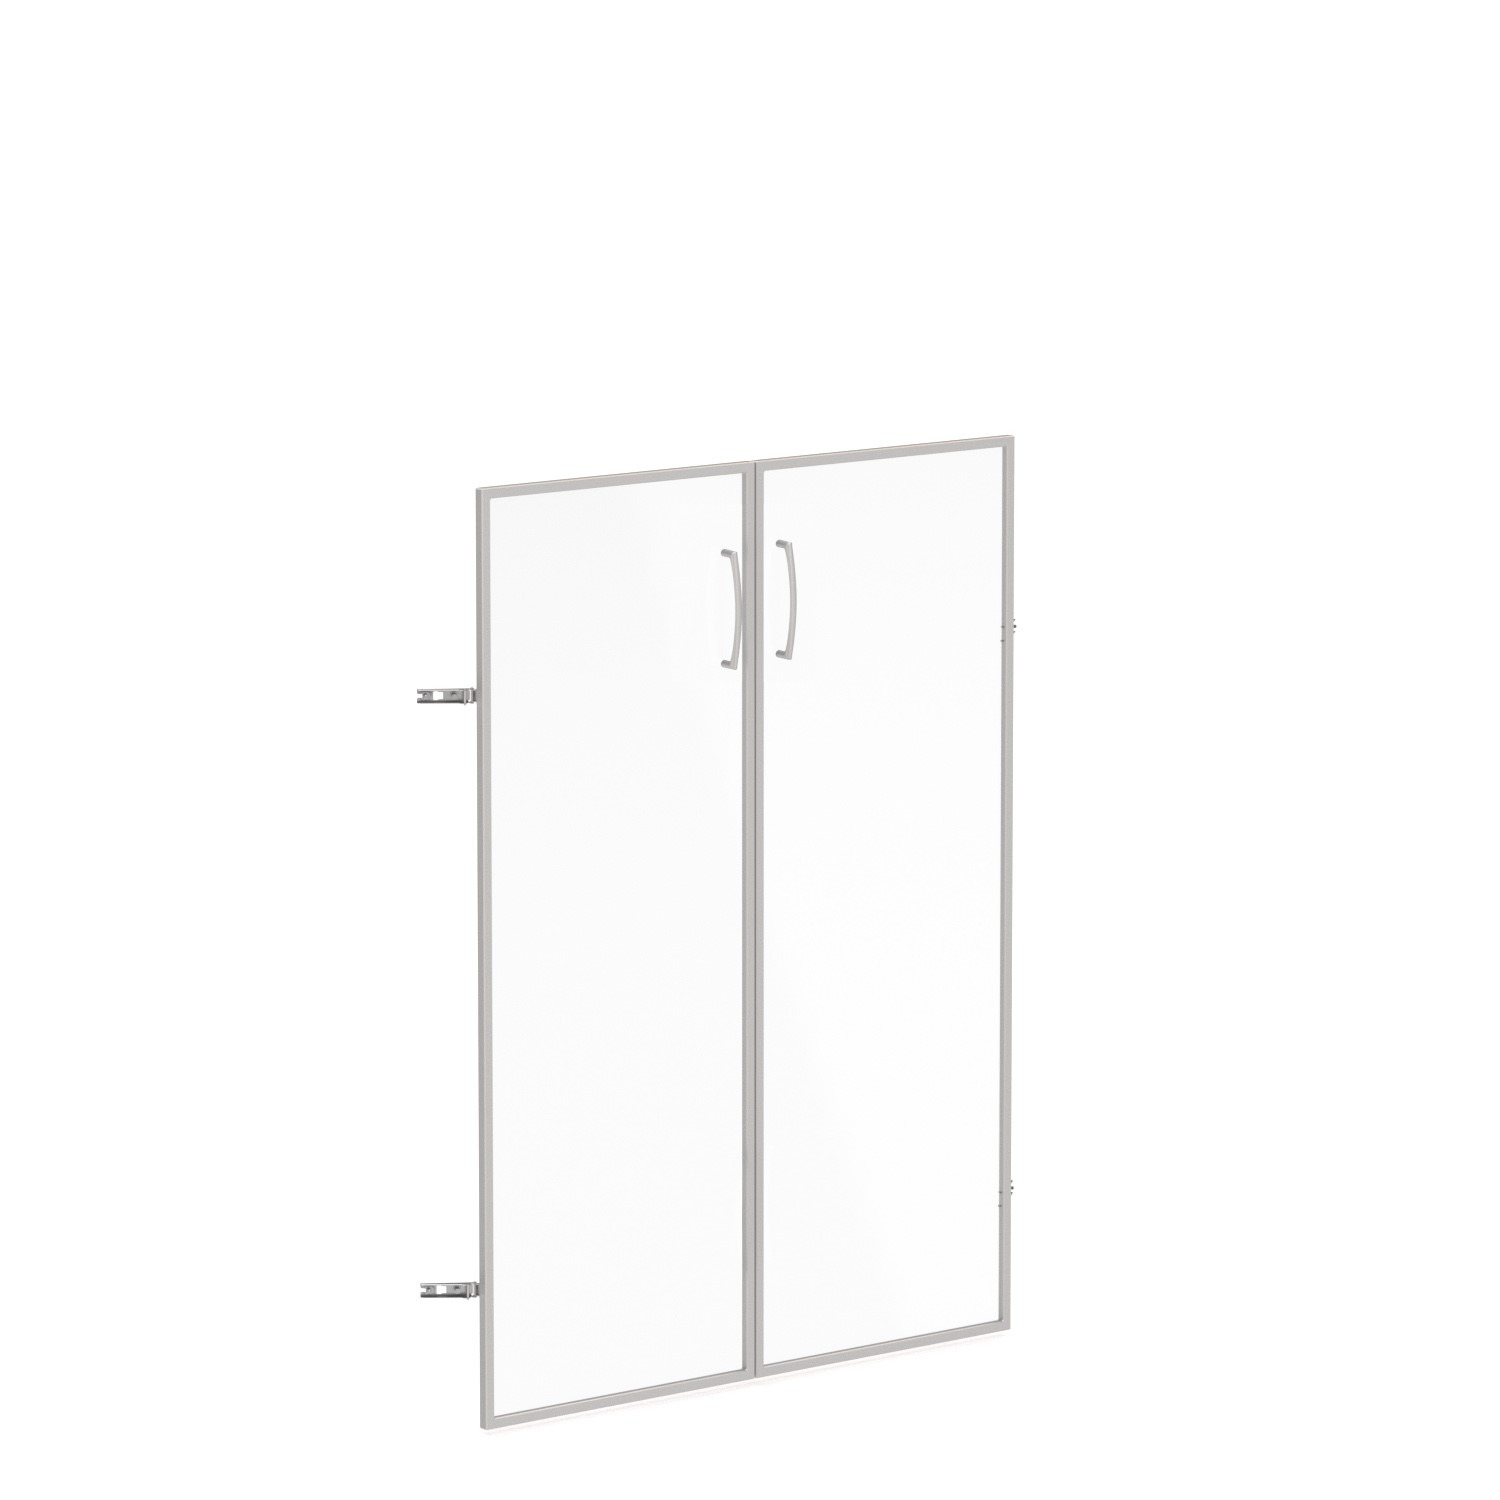 Skleněné dveře v AL rámu, výška 140,3cm, šířka 78,6cm